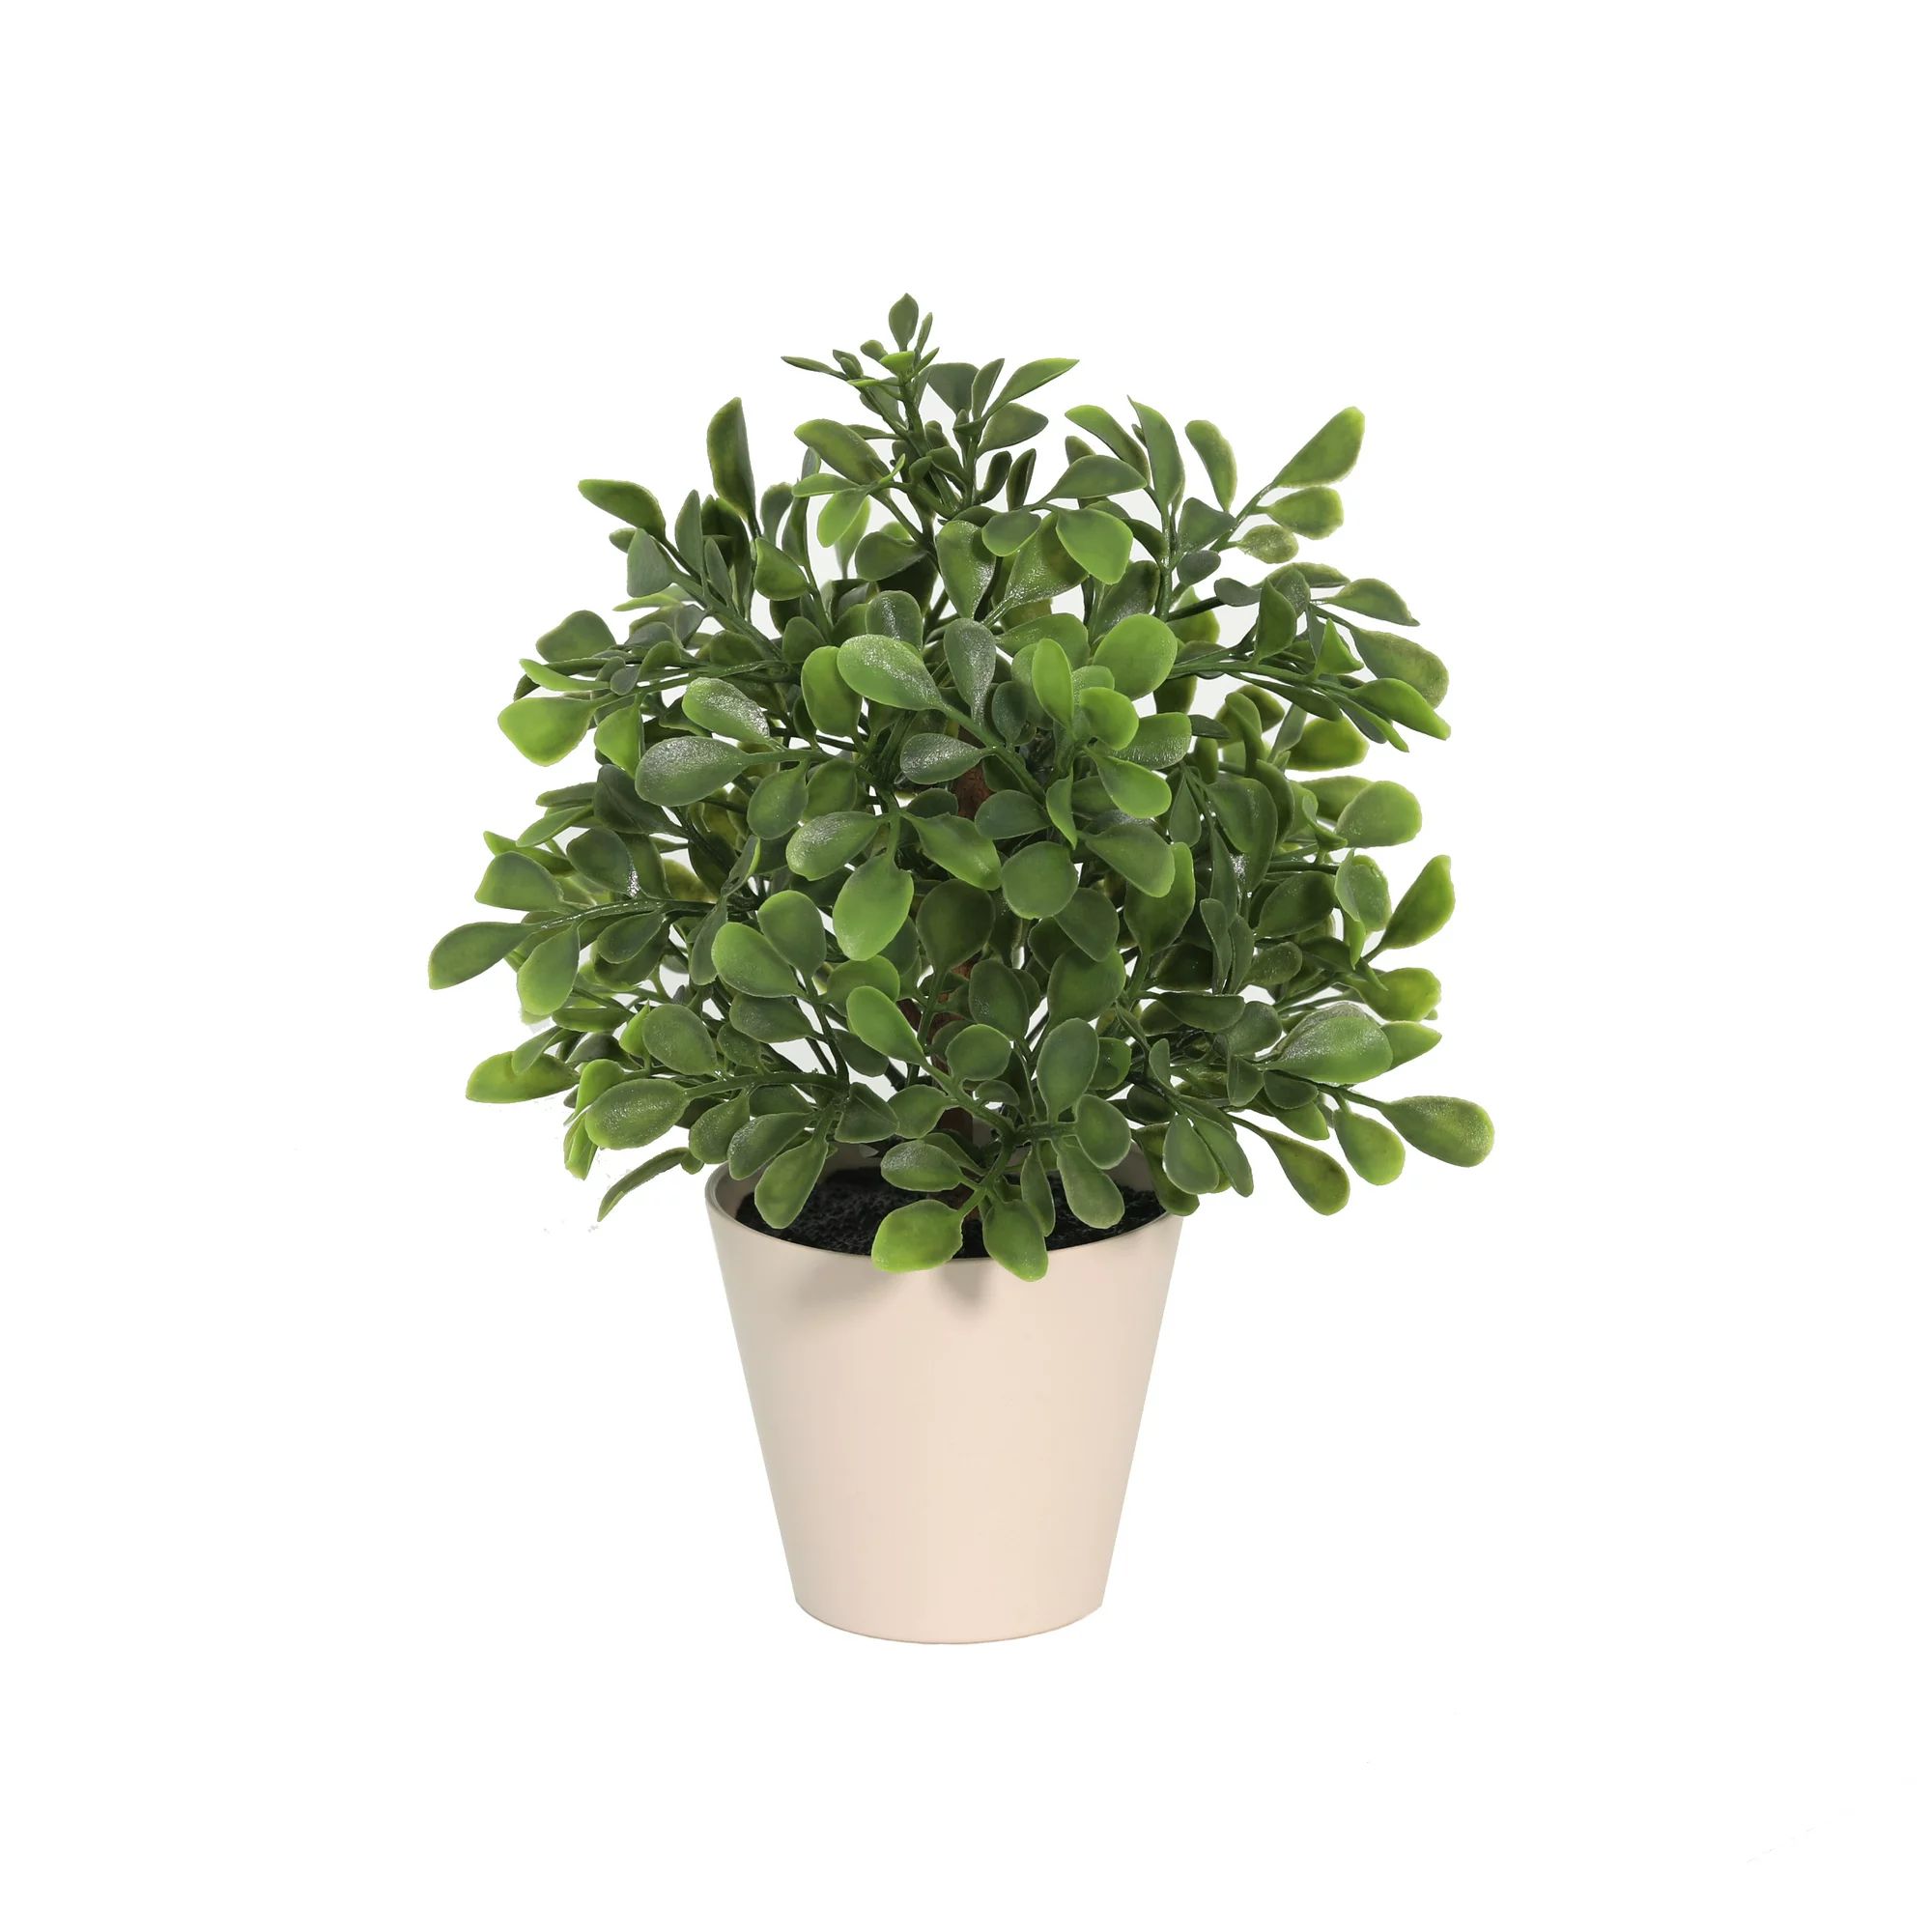 Best sellerPopular pickfor "artificial plants" Mainstays Mainstays 9" Artificial Boxwood Plant in... | Walmart (US)